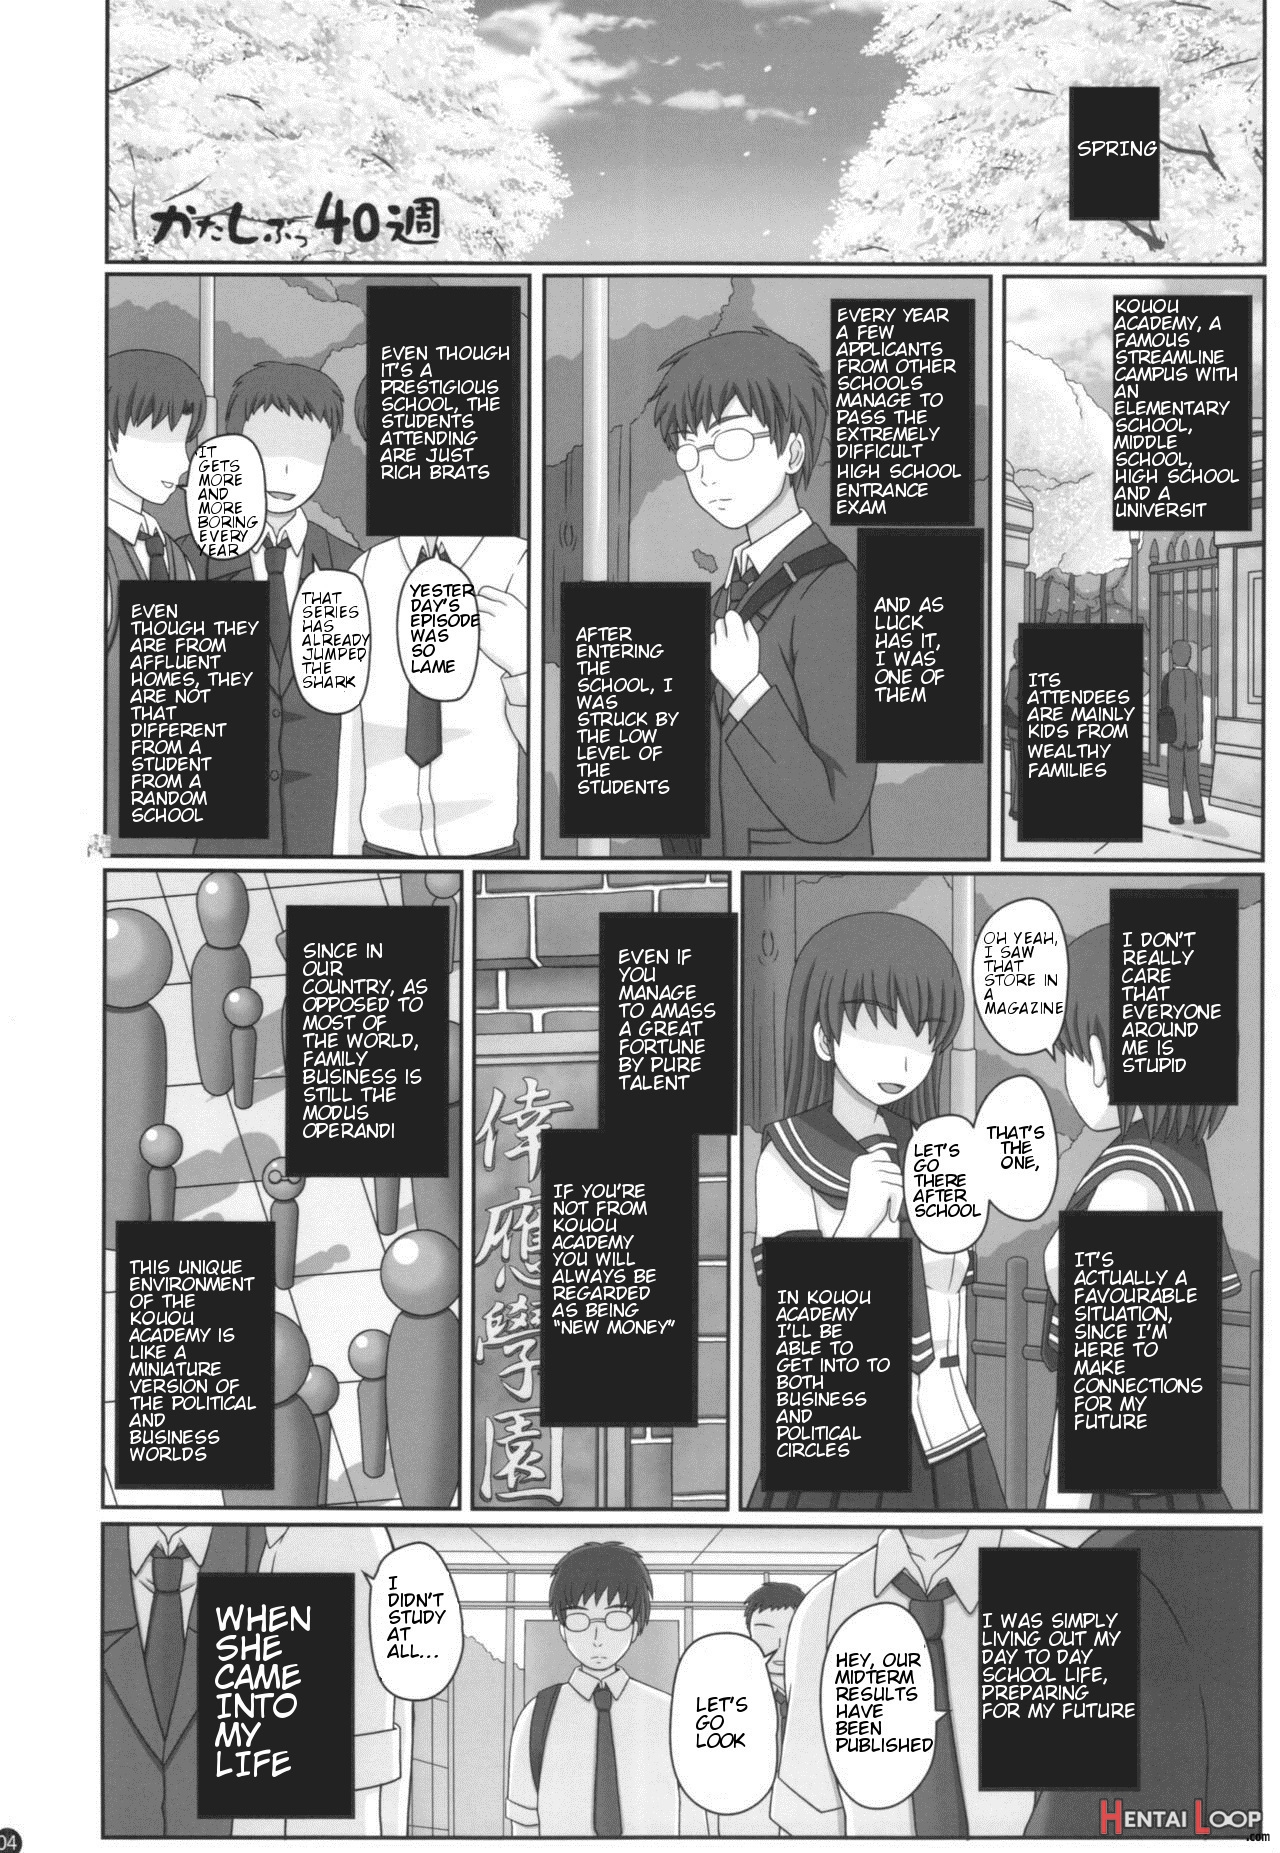 Katashibu 40-shuu + Kaijou Genteibon page 2